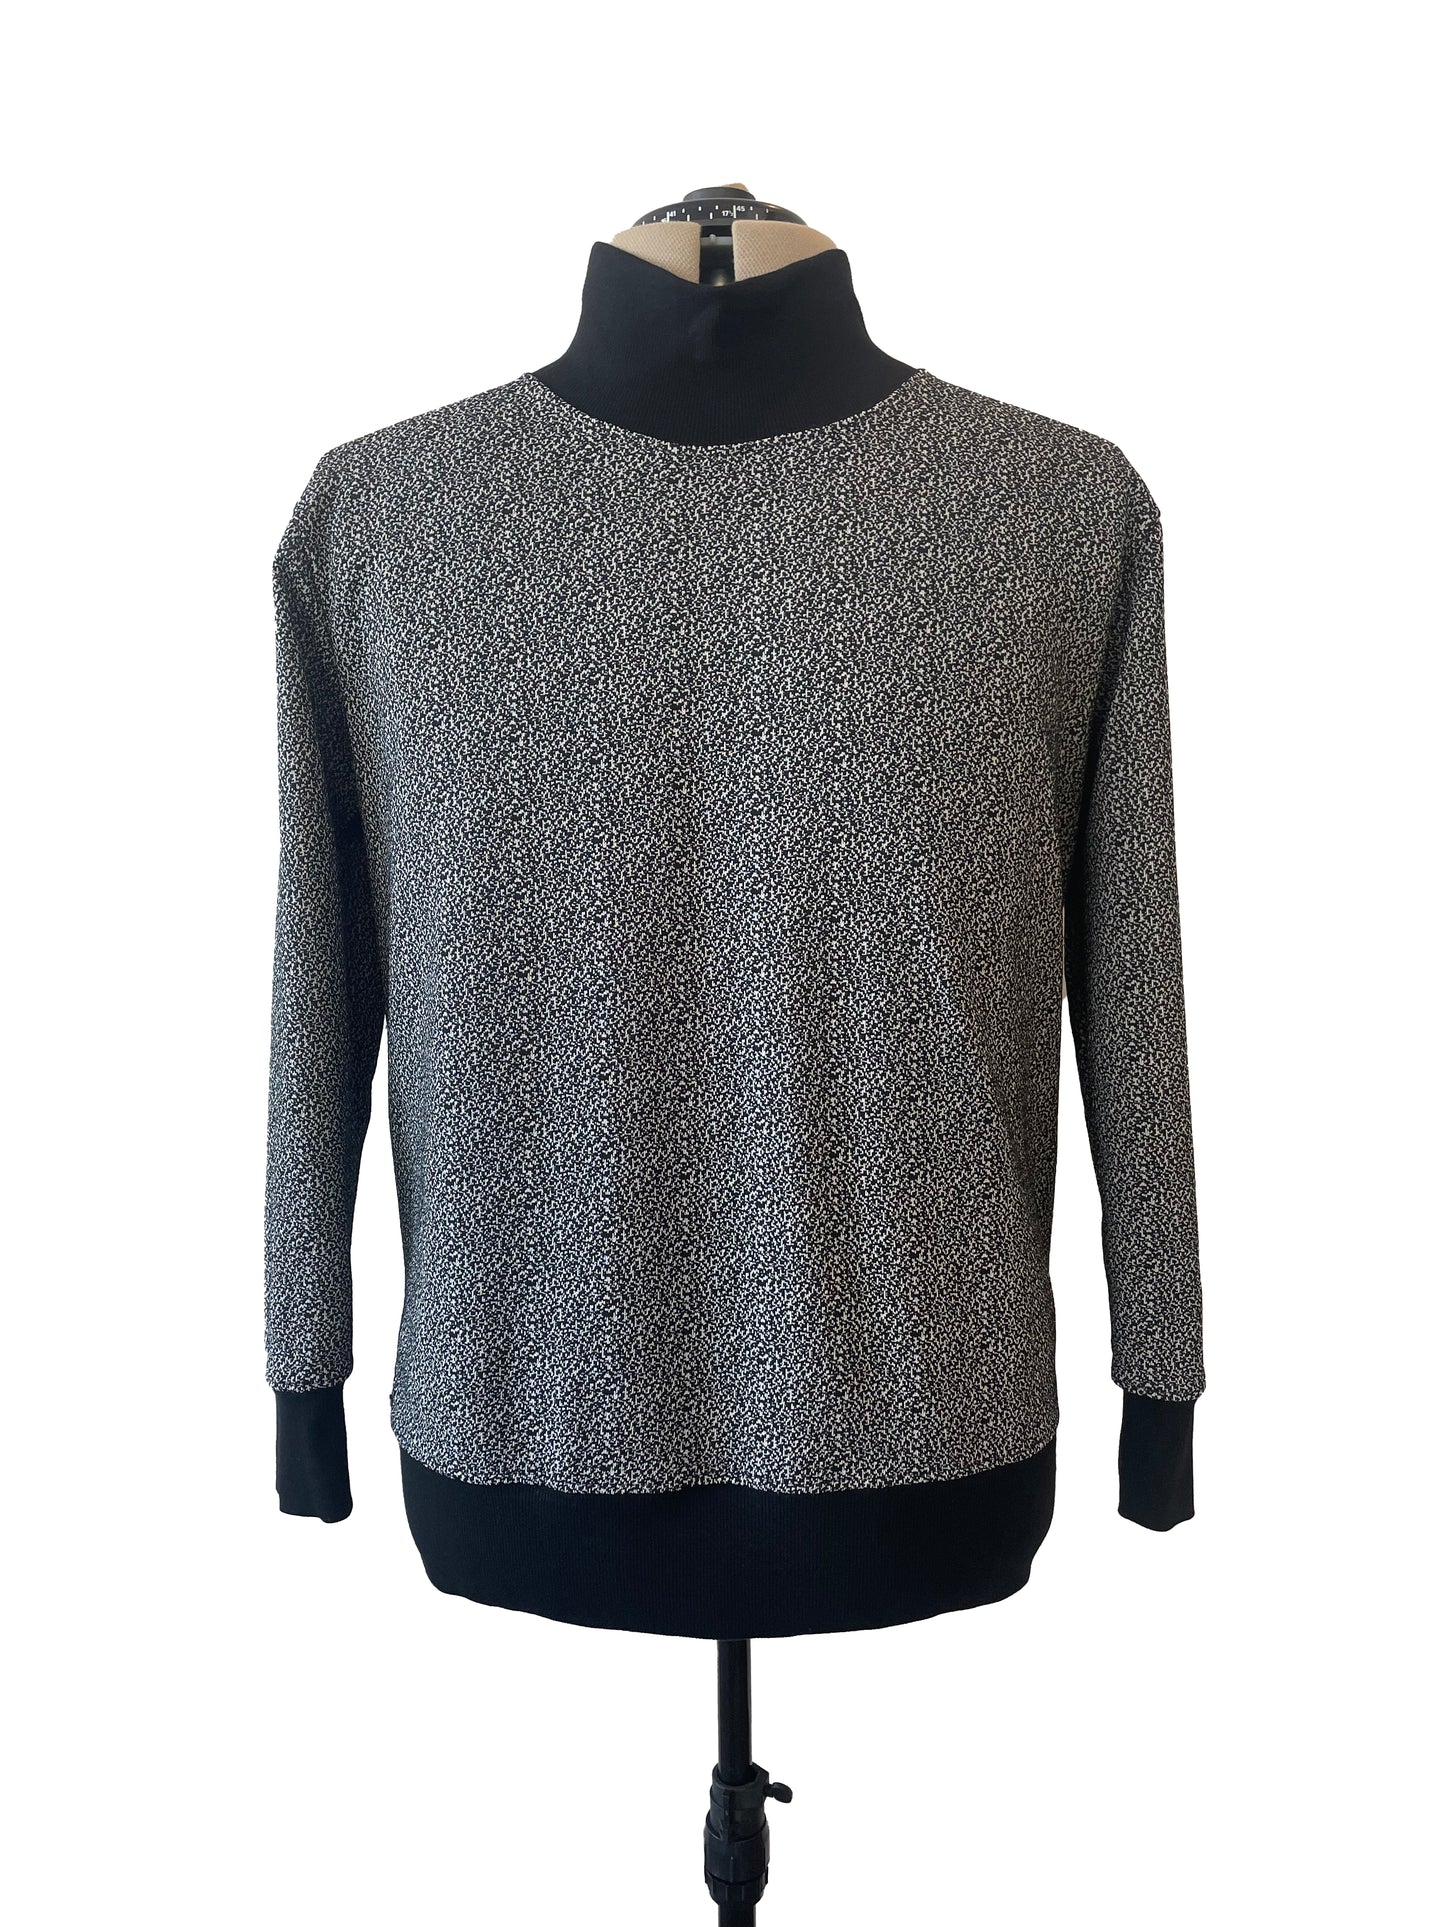 Anyoto Sweater